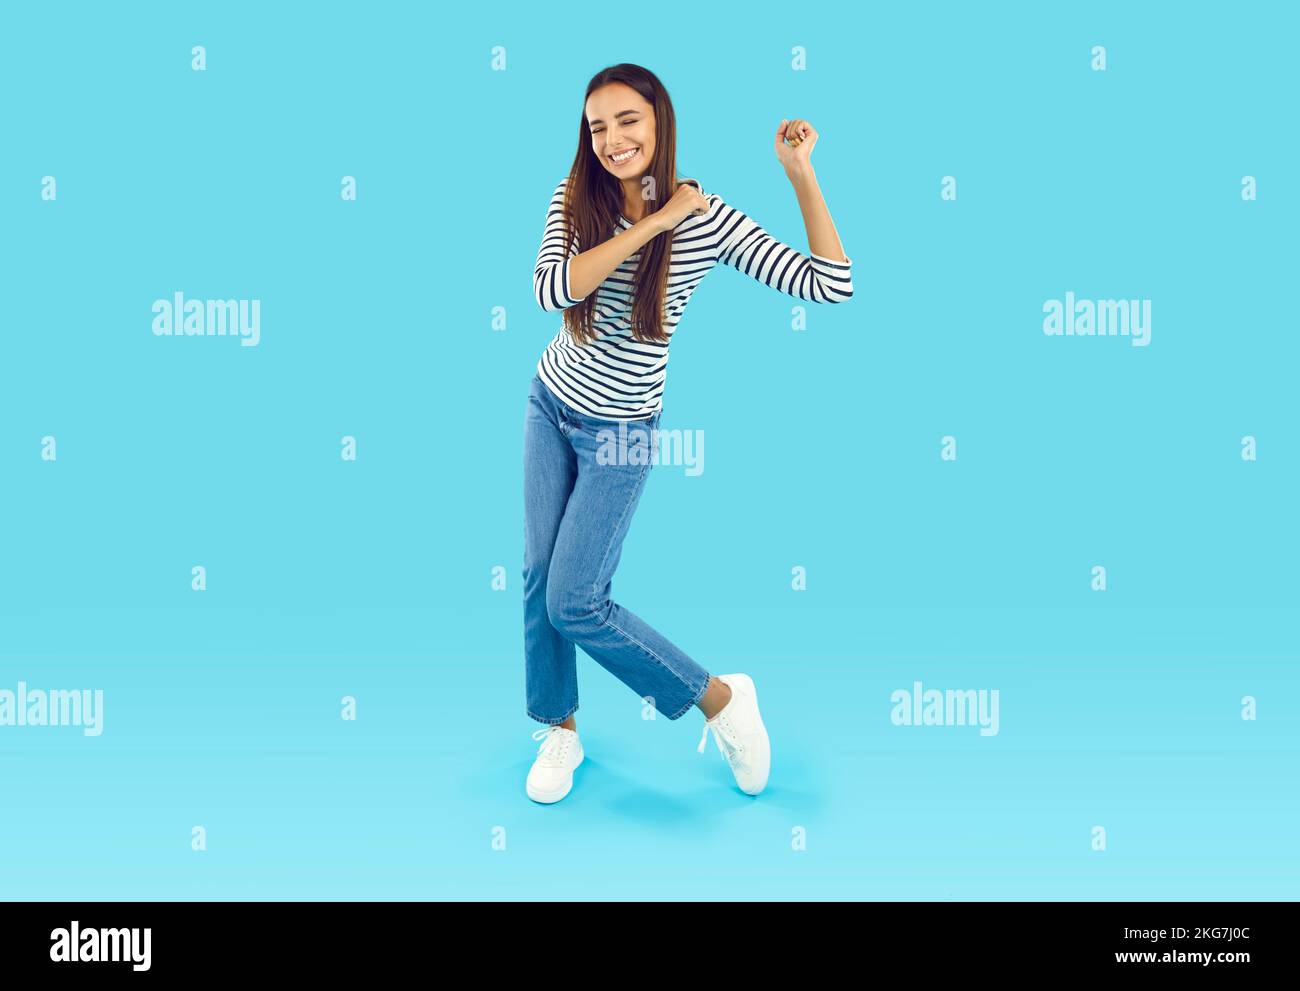 Foto a tamaño completo de una joven morena en una sudadera a rayas y jeans azules que se engañan y bailan Foto de stock